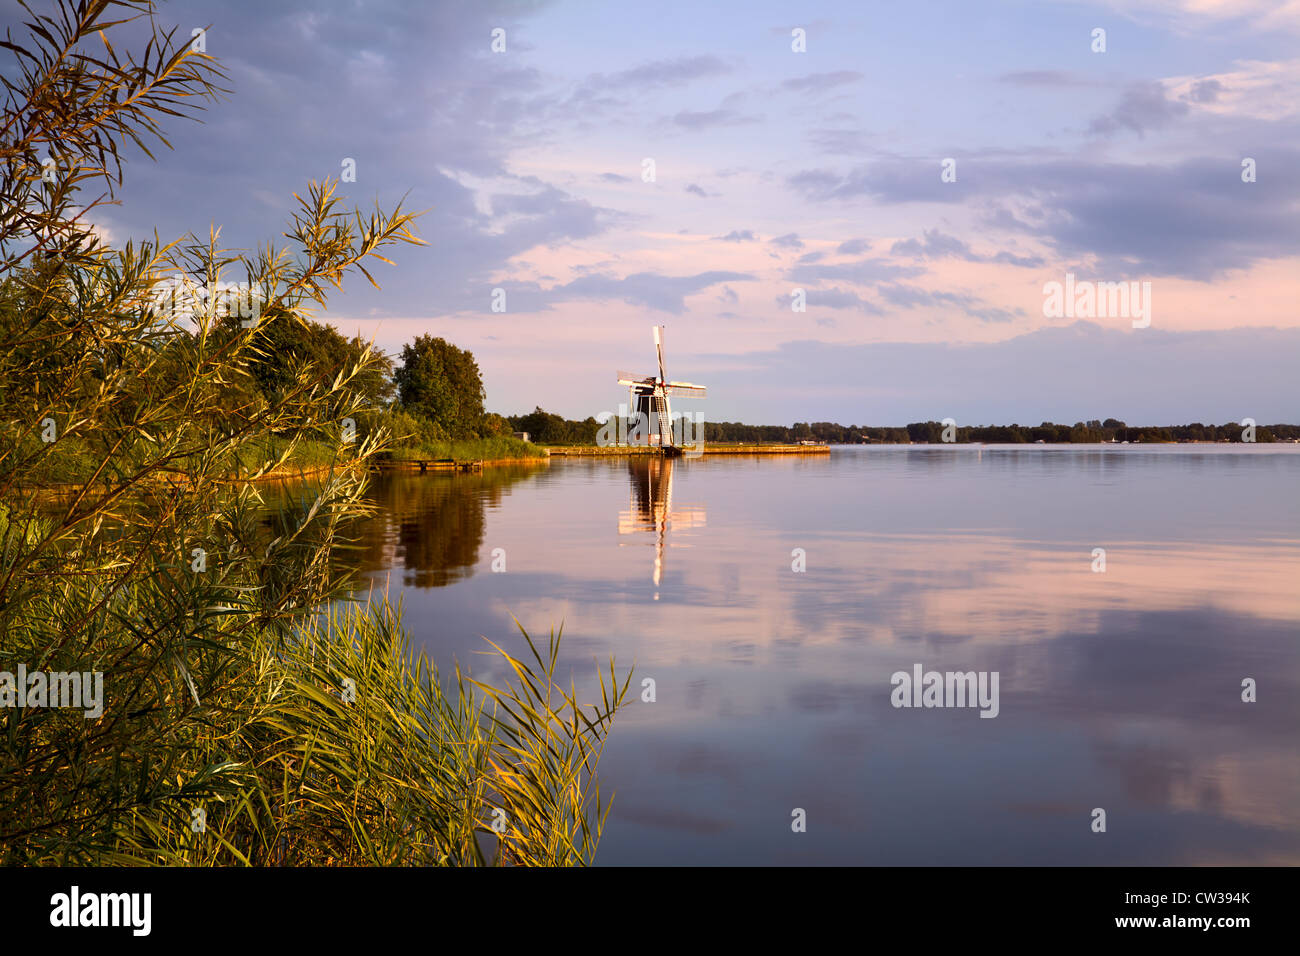 Dutch windmill on lake at sunset Stock Photo